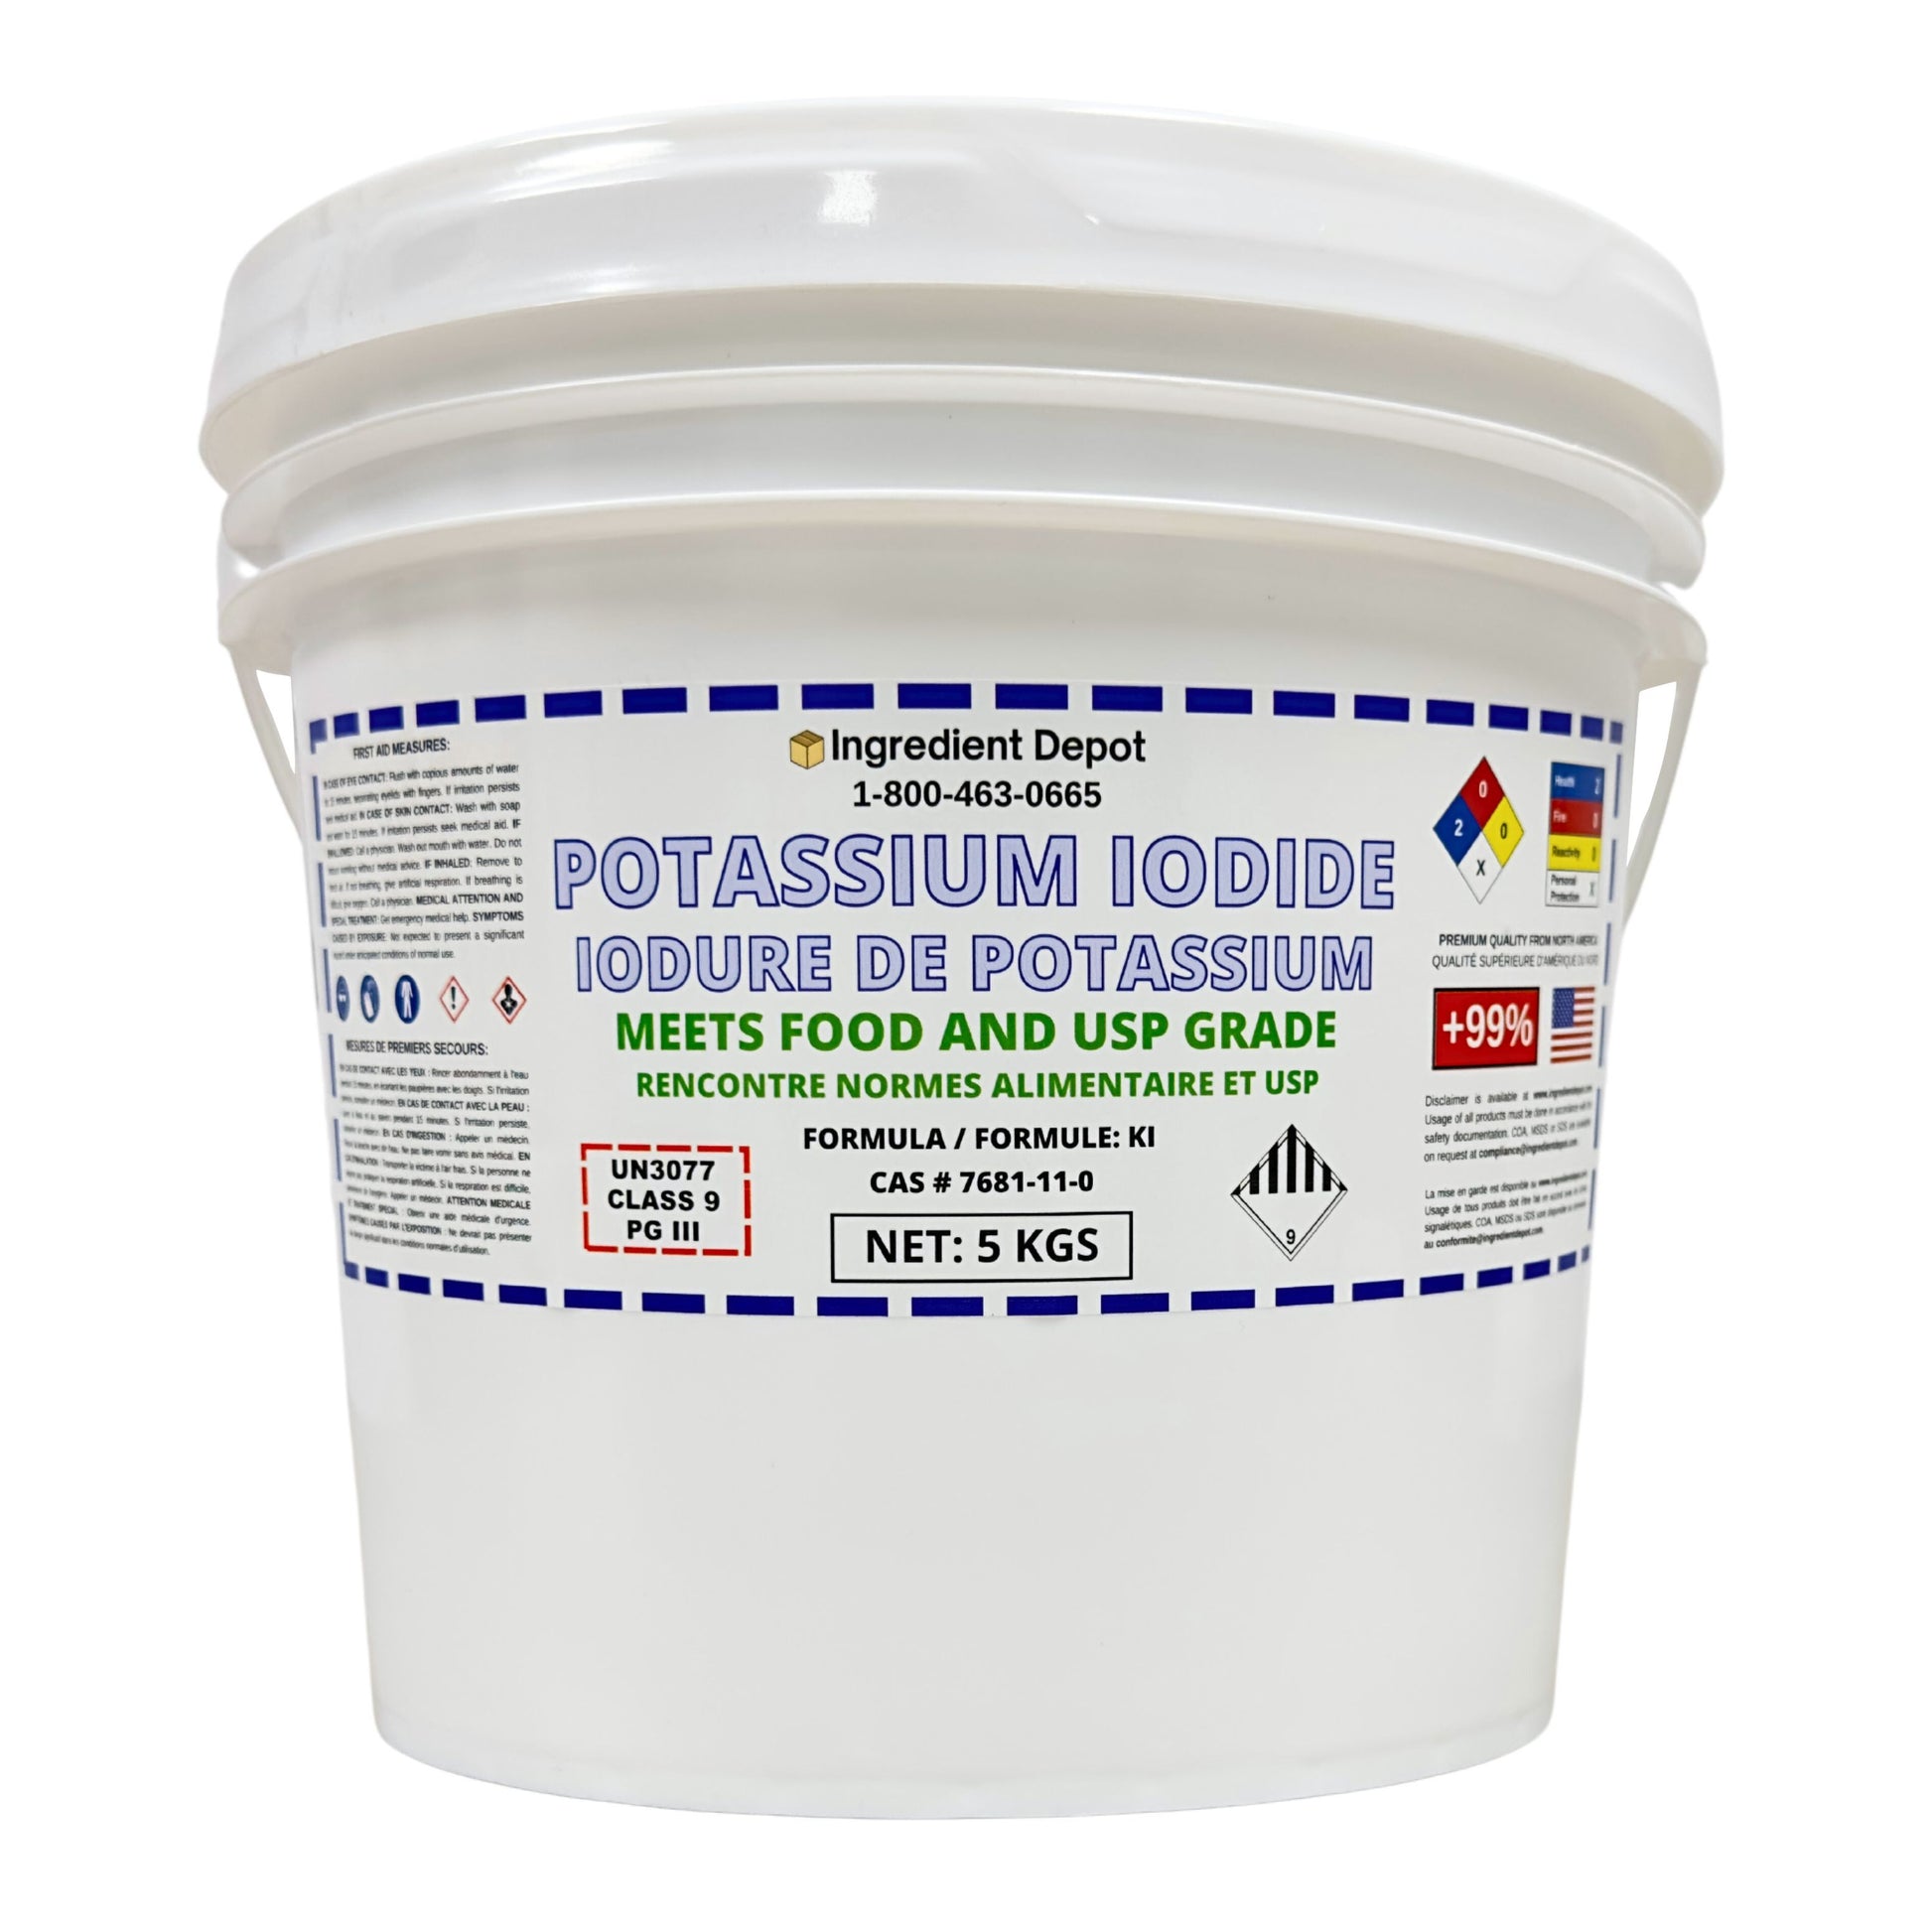 Potassium Iodide +99% USP Grade 5 kgs - IngredientDepot.com